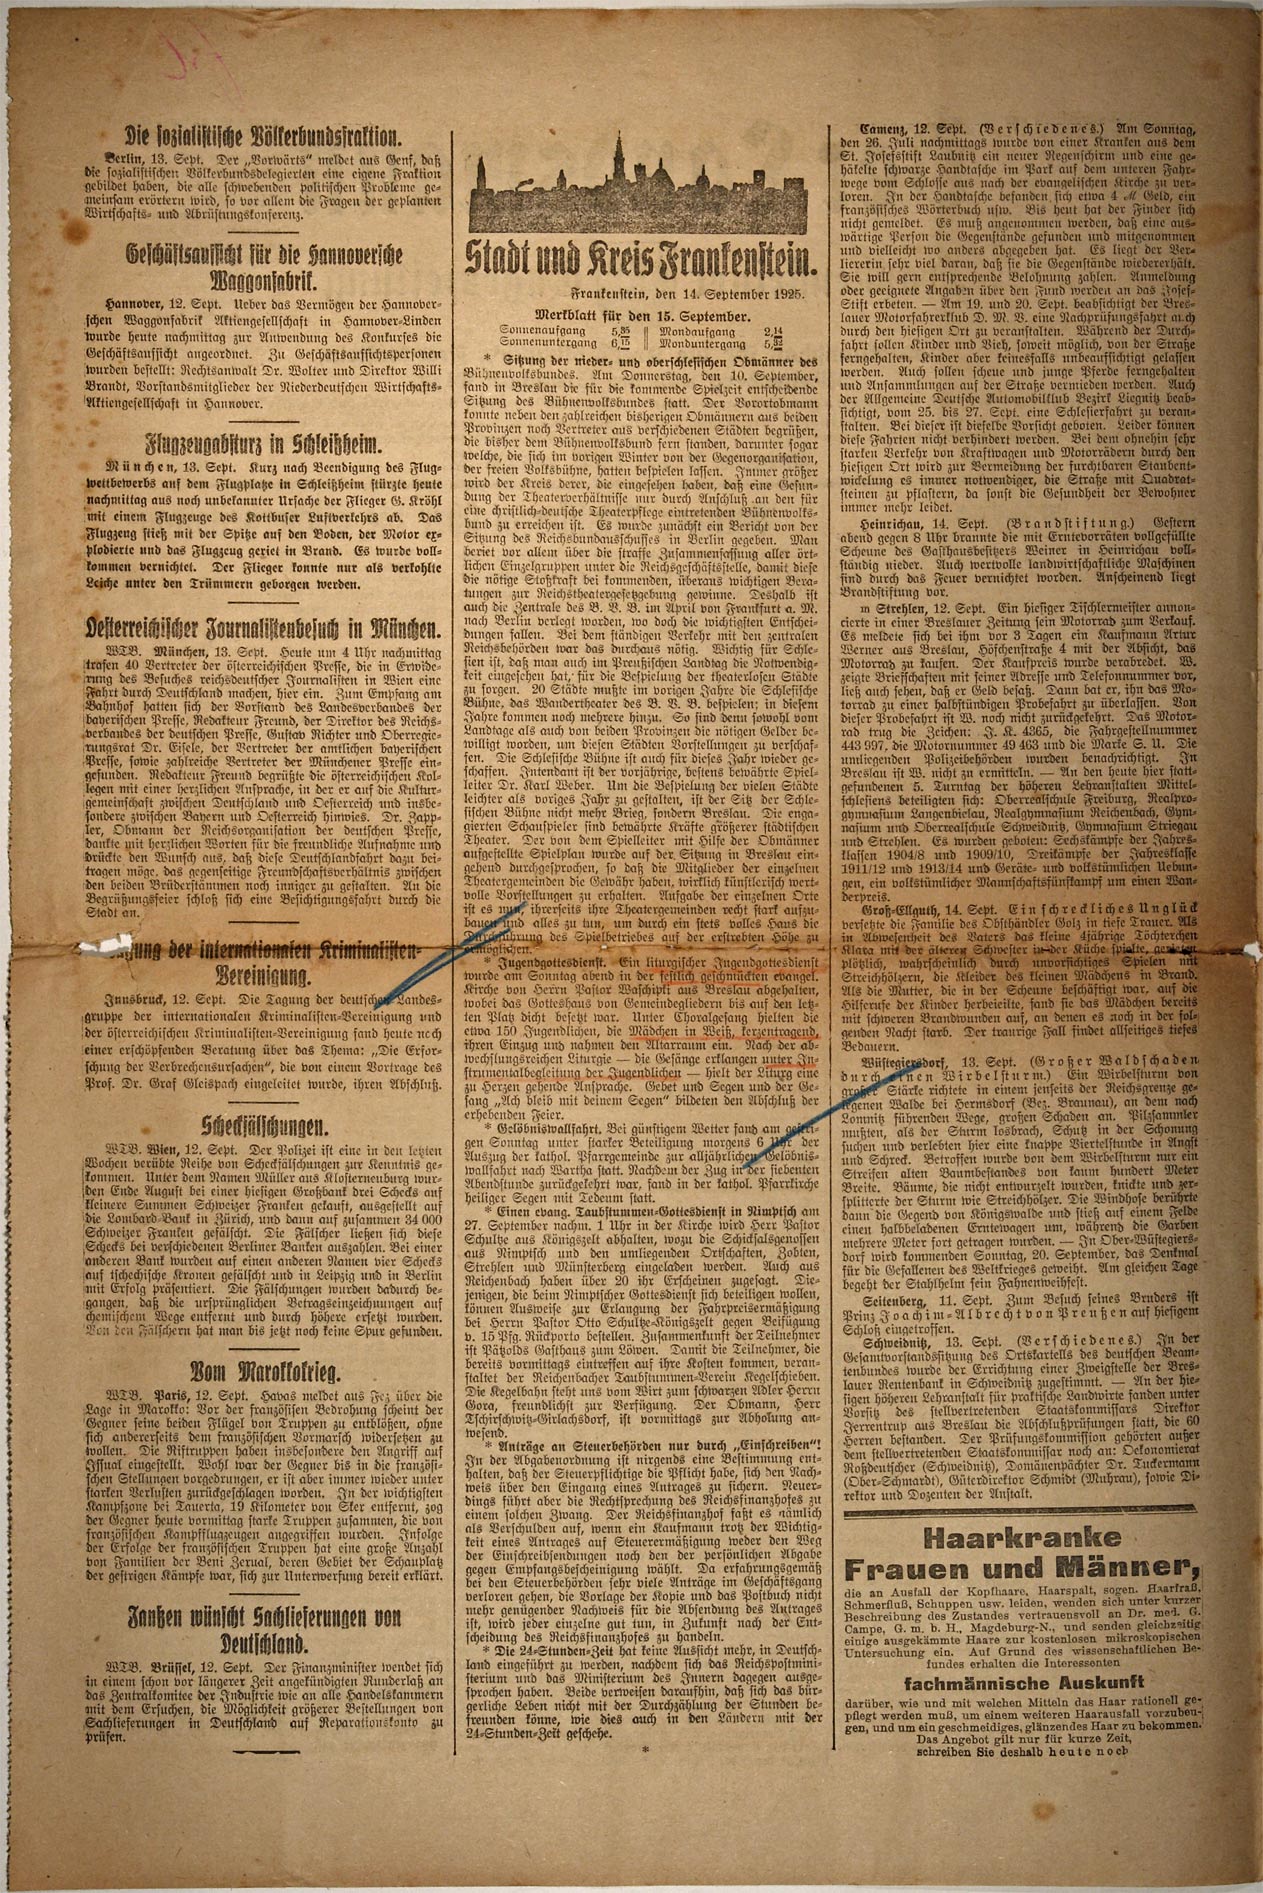 Der Landsmann 15.09.1925 Seite 2